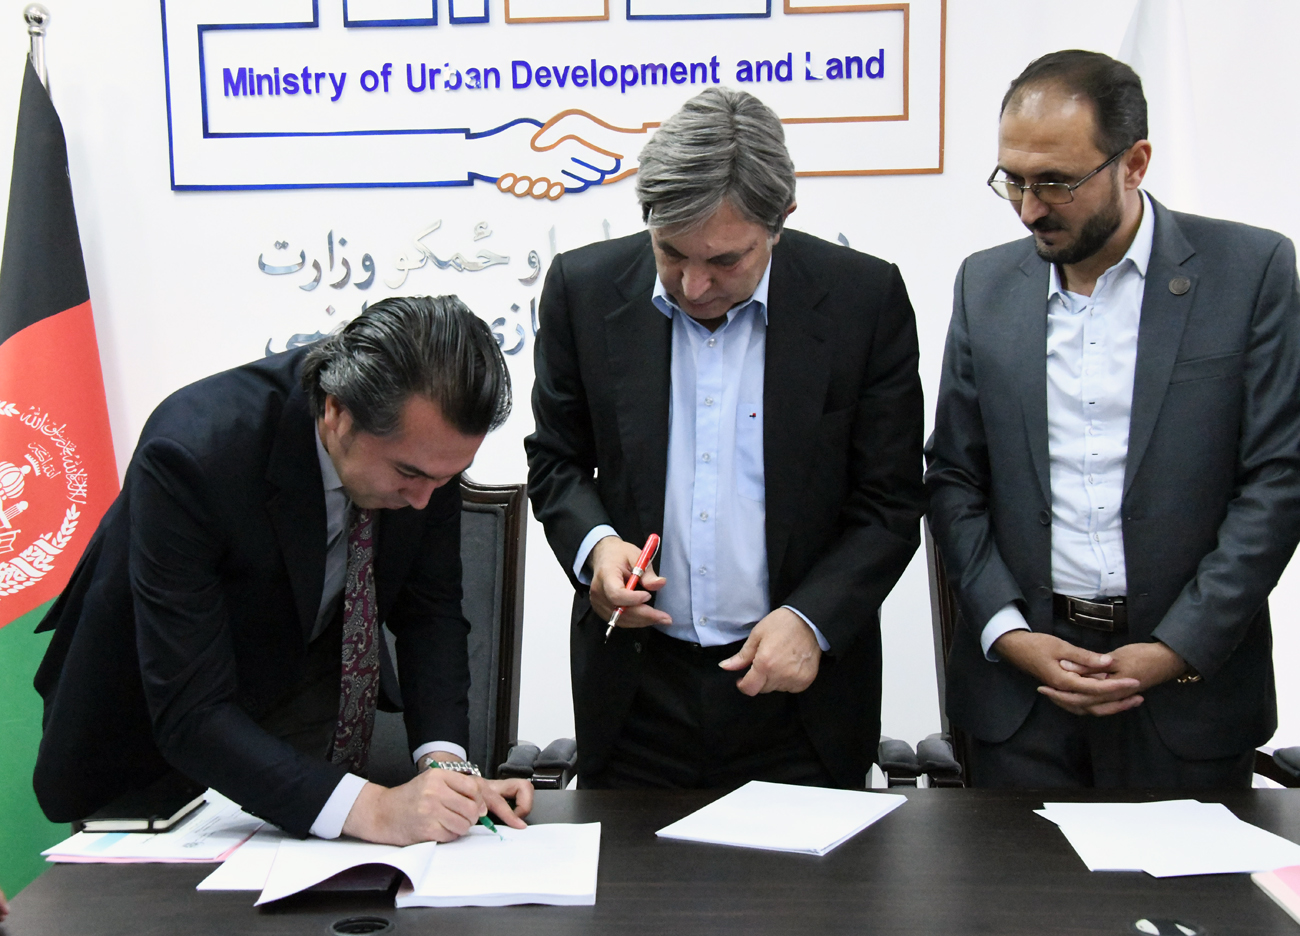 محترم محمود کرزی سرپرست وزارت شهرسازی و اراضی پنج پلان بهسازی را منظور کرد 